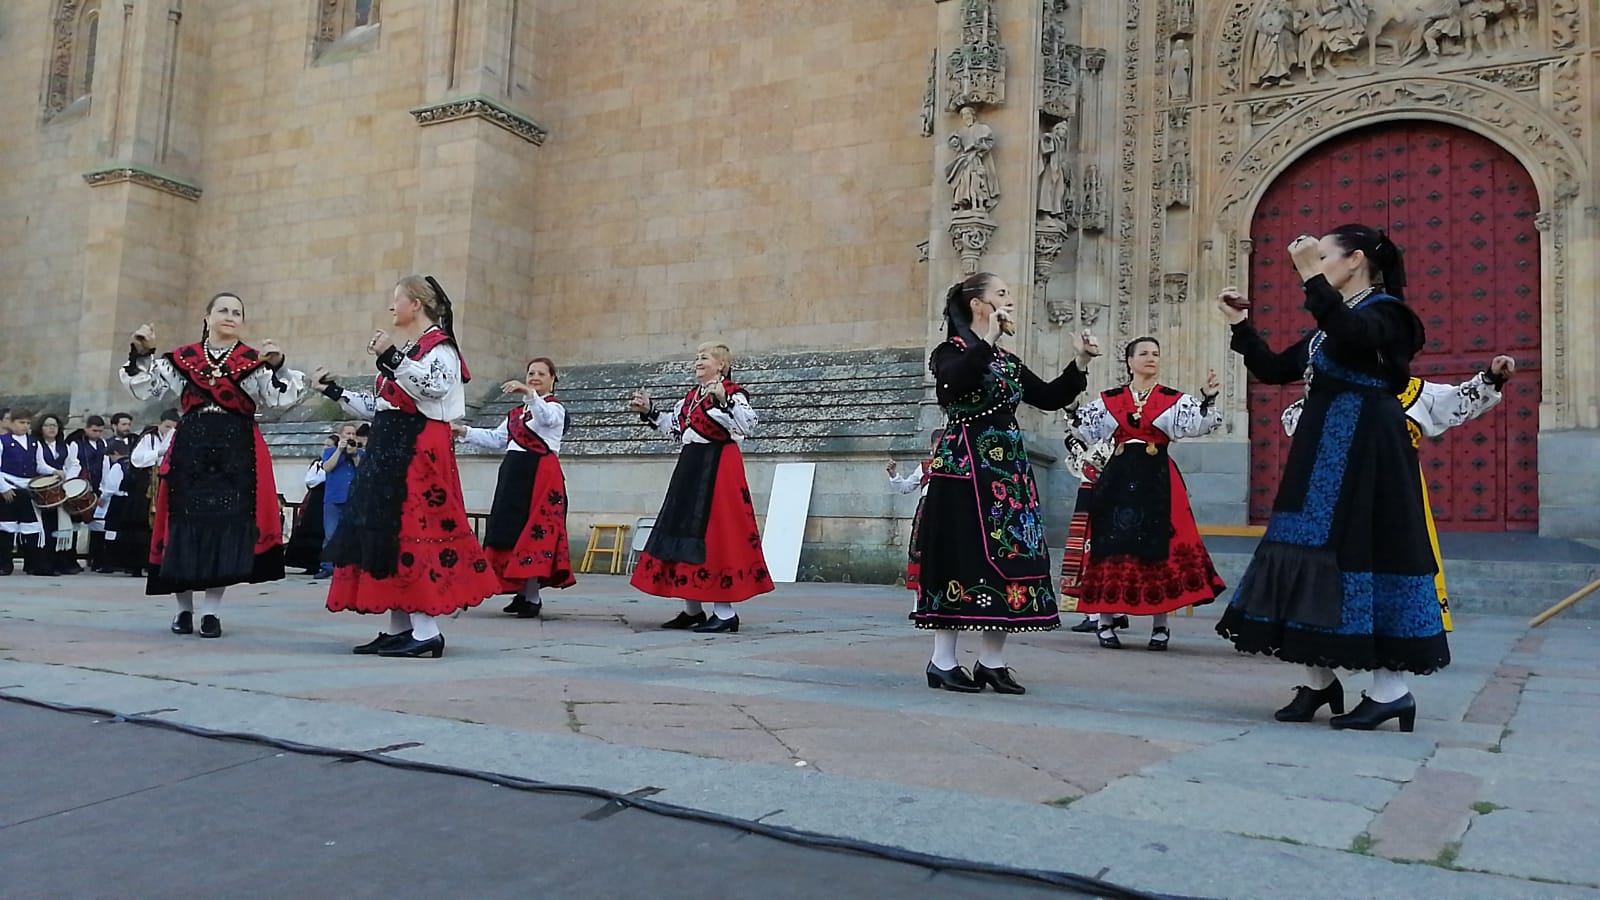 II Festival de Folclore Virgen de la Vega, Salamanca.